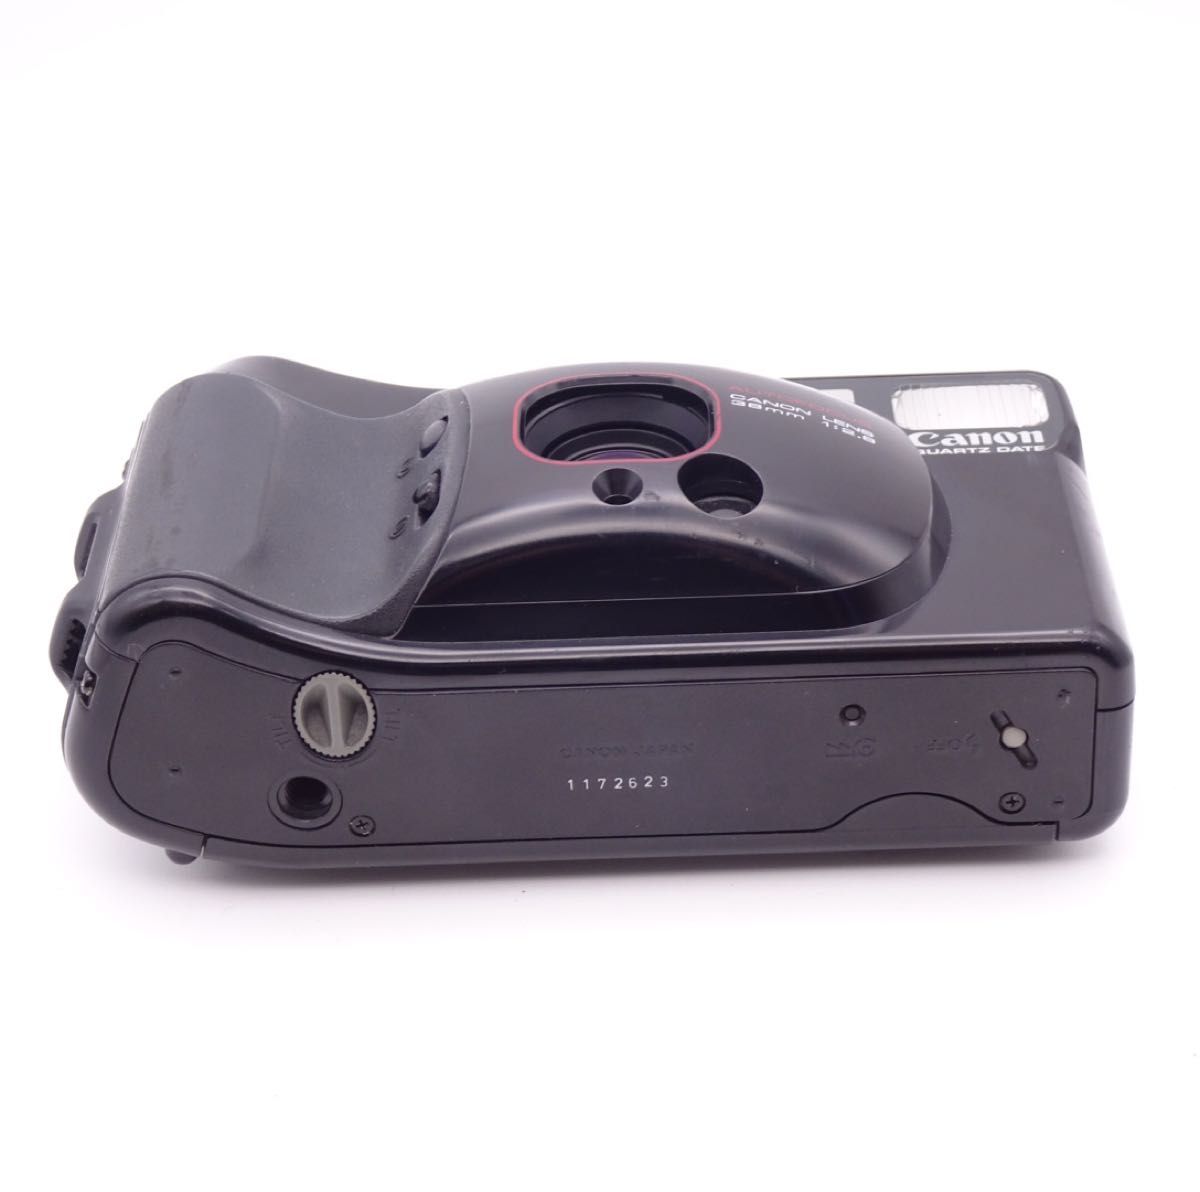 【完動品】 Canon Autoboy 3 コンパクトフィルムカメラ キャノン オートボーイ3 レトロフィルムカメラ